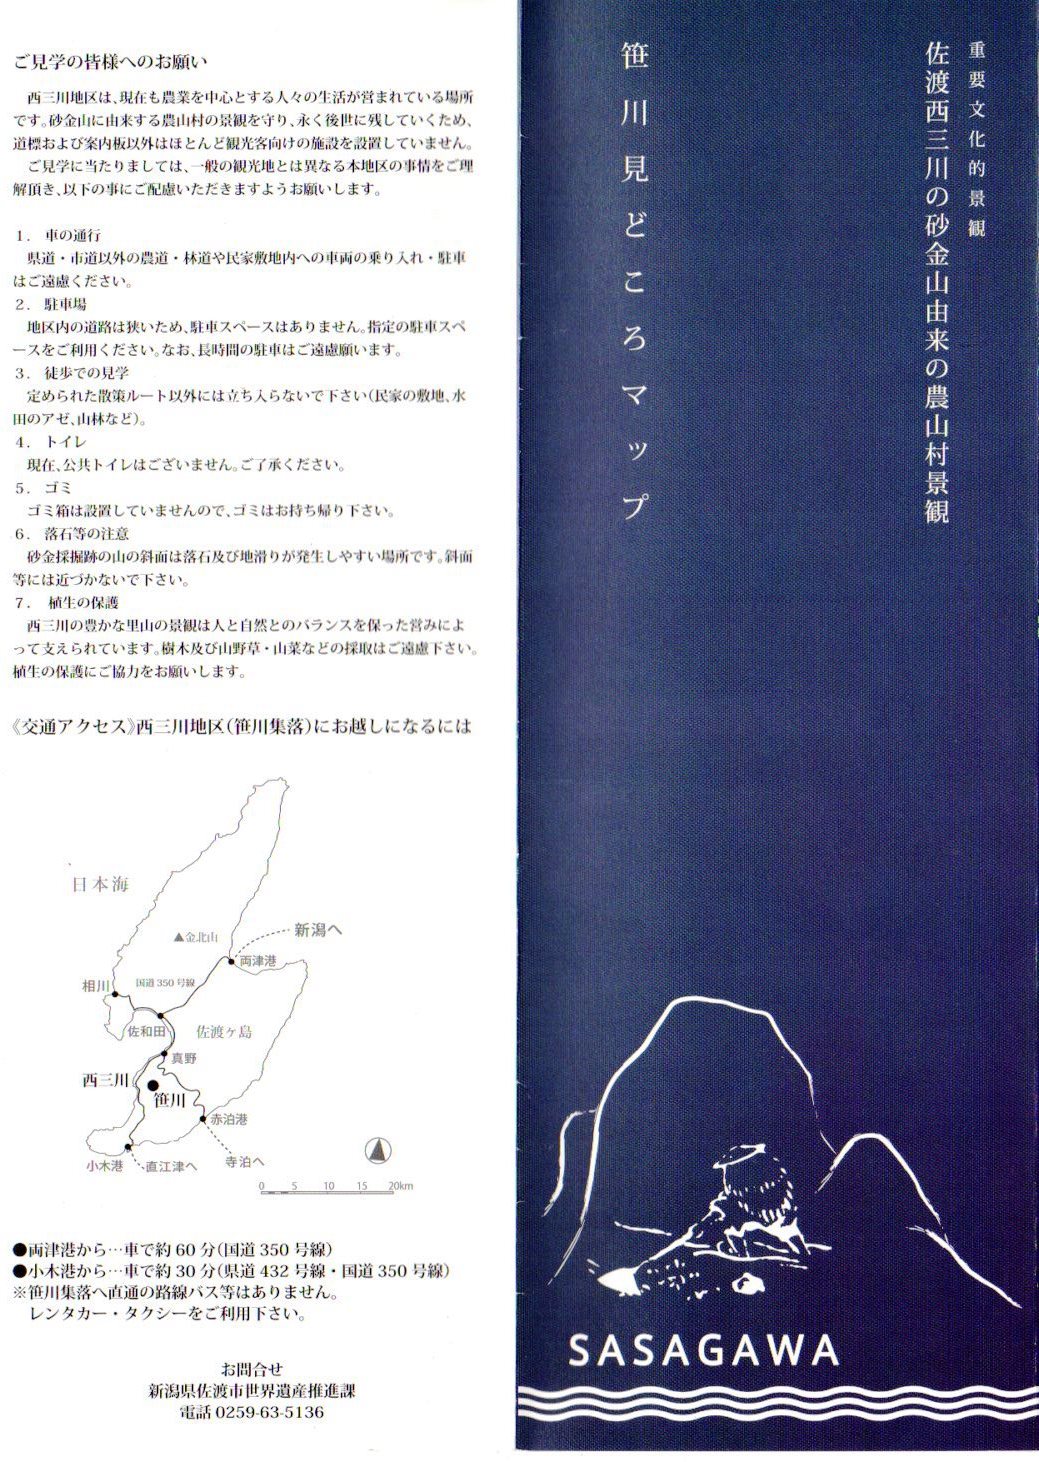 笹川見どころマップ (1)